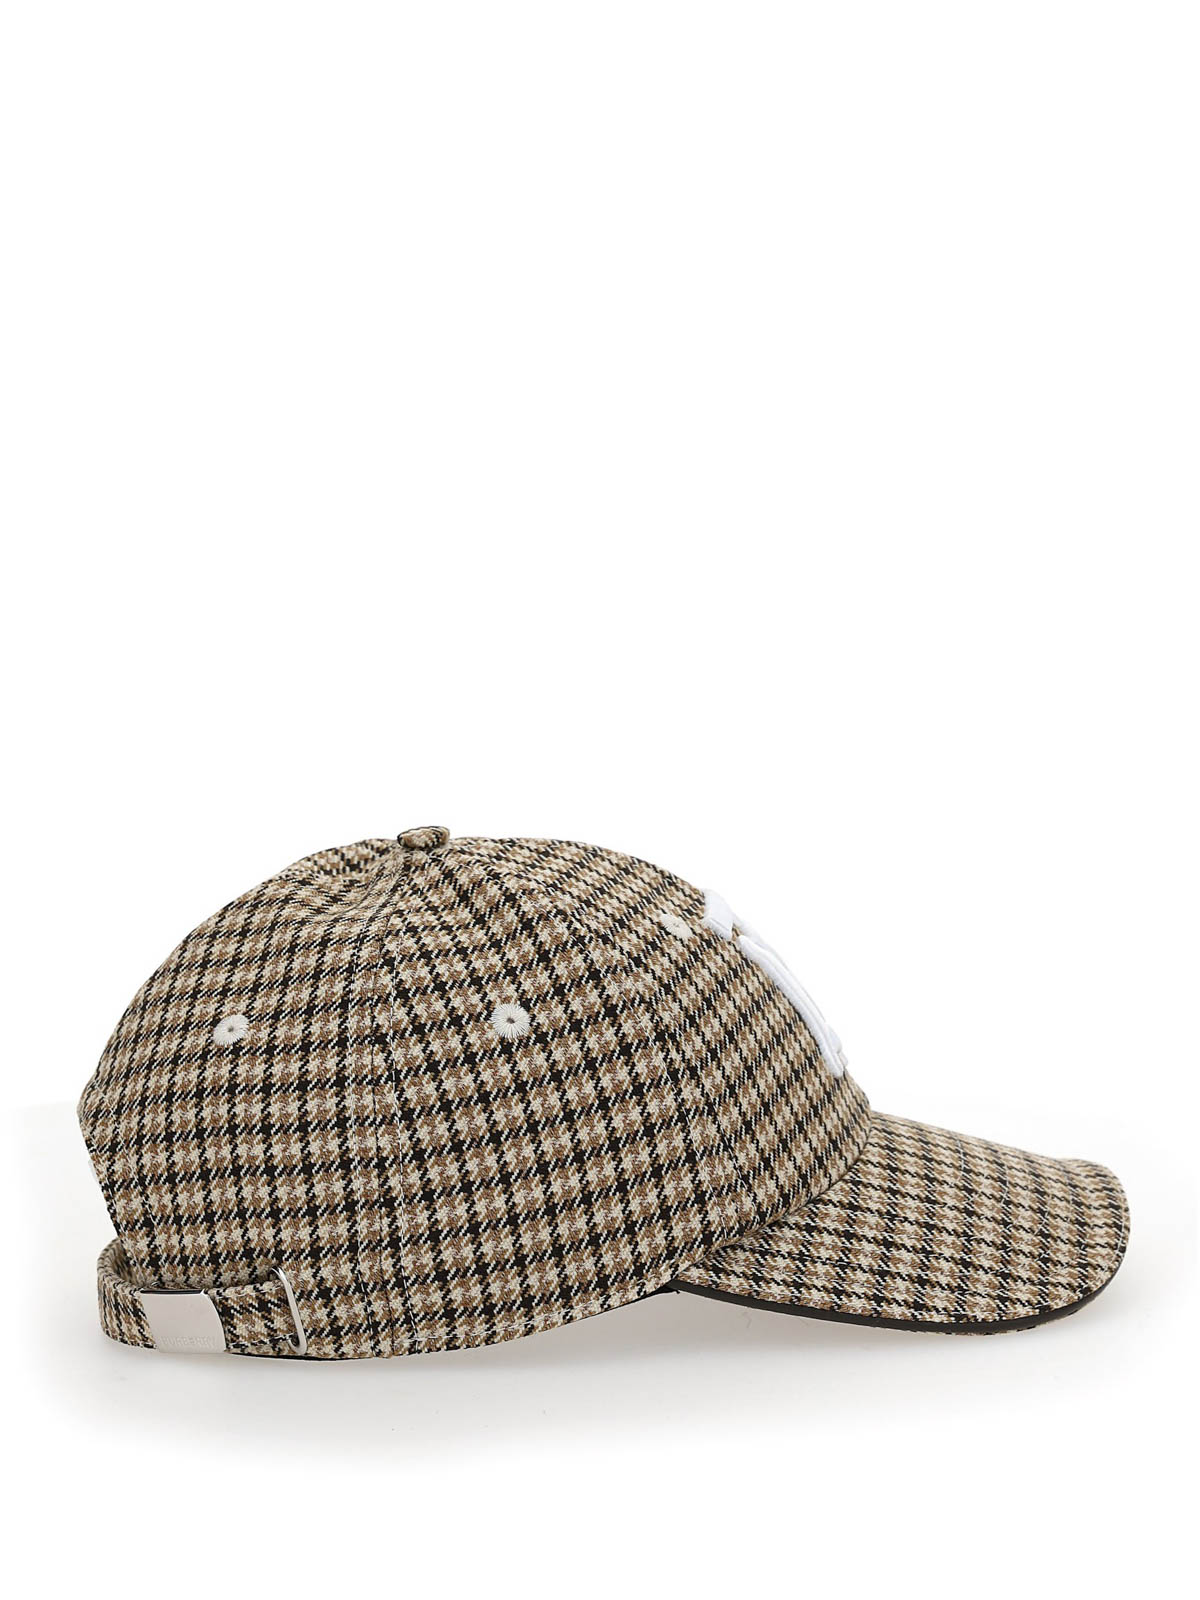 Hats & caps Burberry - Wool baseball cap - 8034886 | Shop online at iKRIX